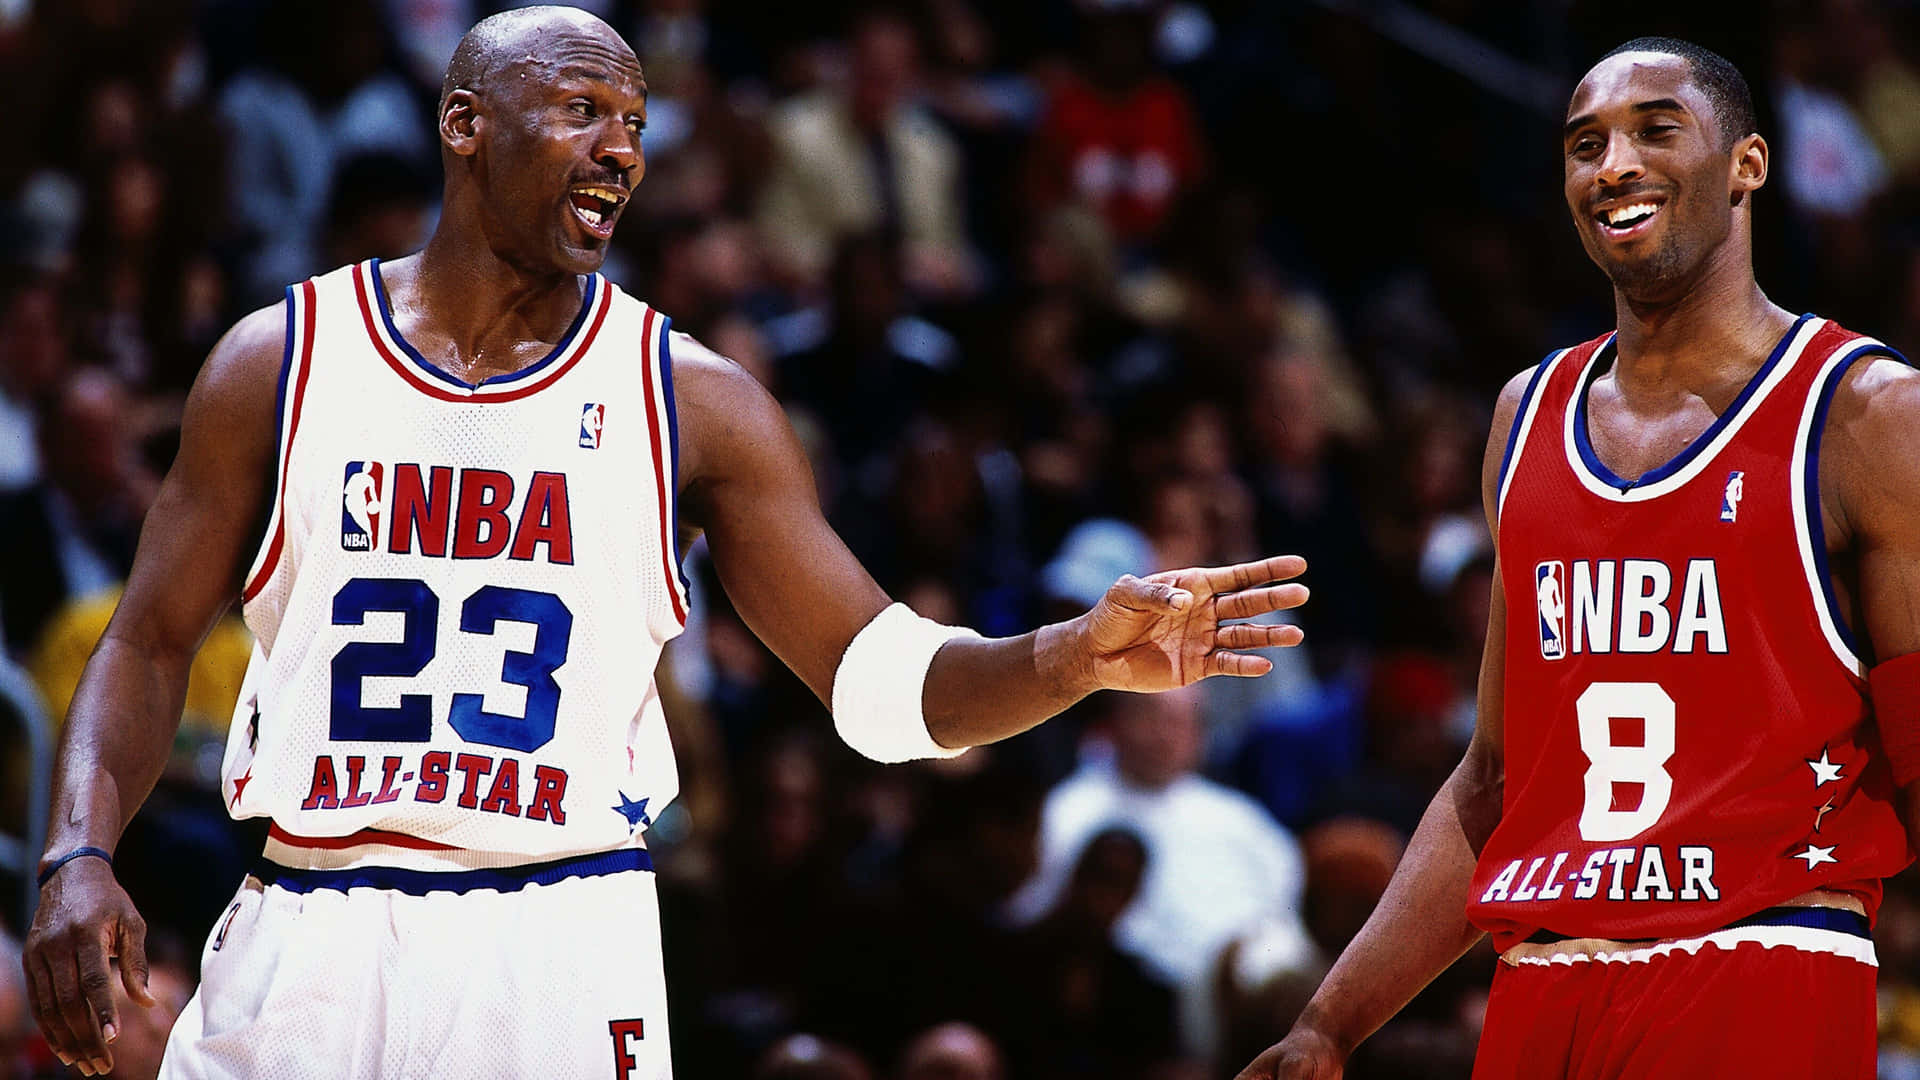 Nbalegenden Kobe Bryant Und Michael Jordan, Fotografie Von 2003. Wallpaper